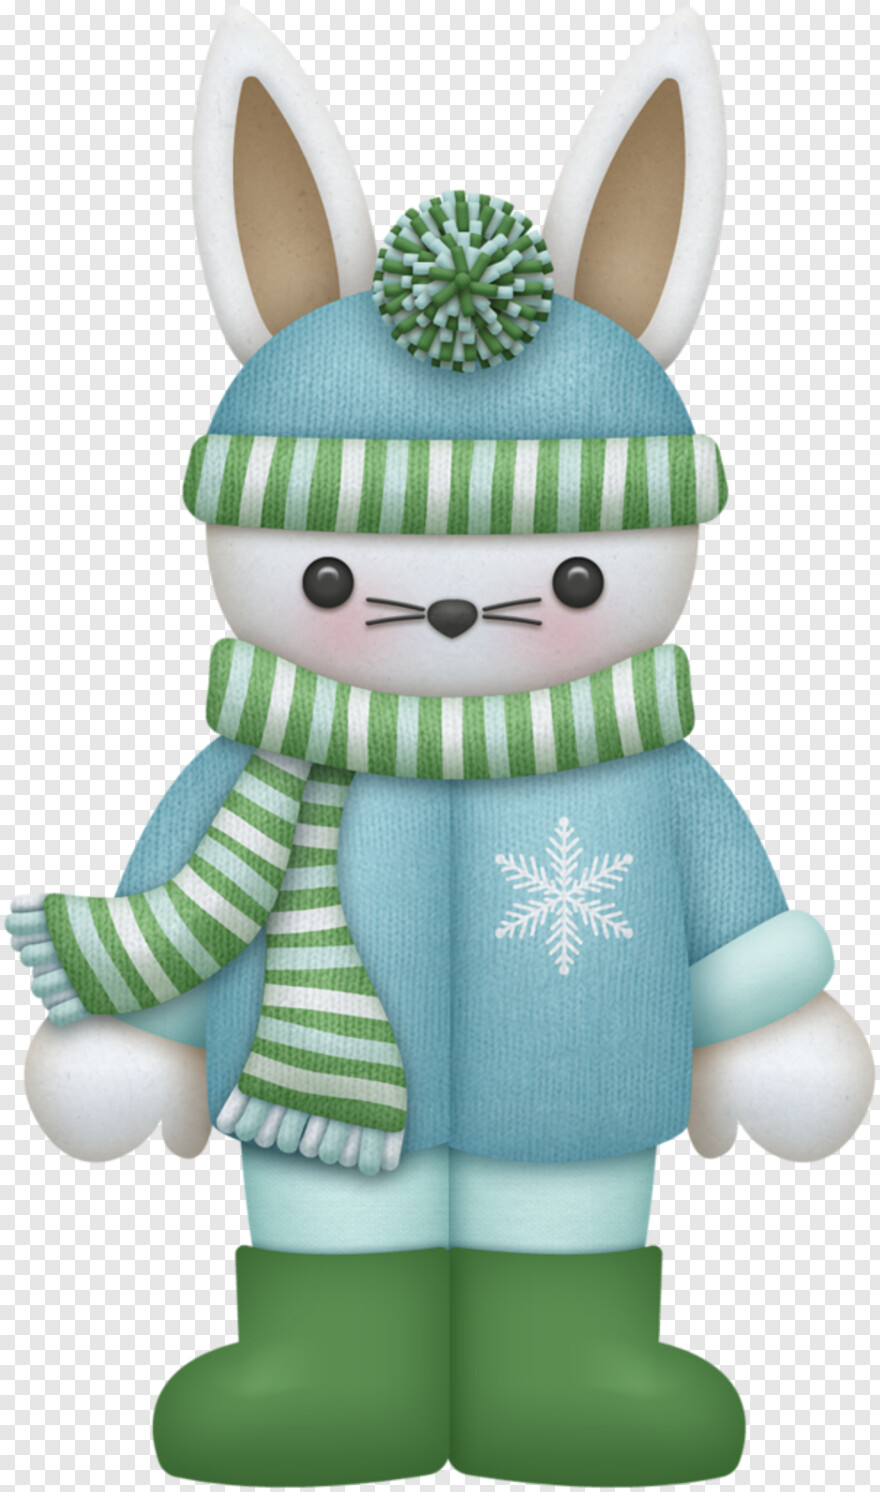 snowman-clipart # 617131